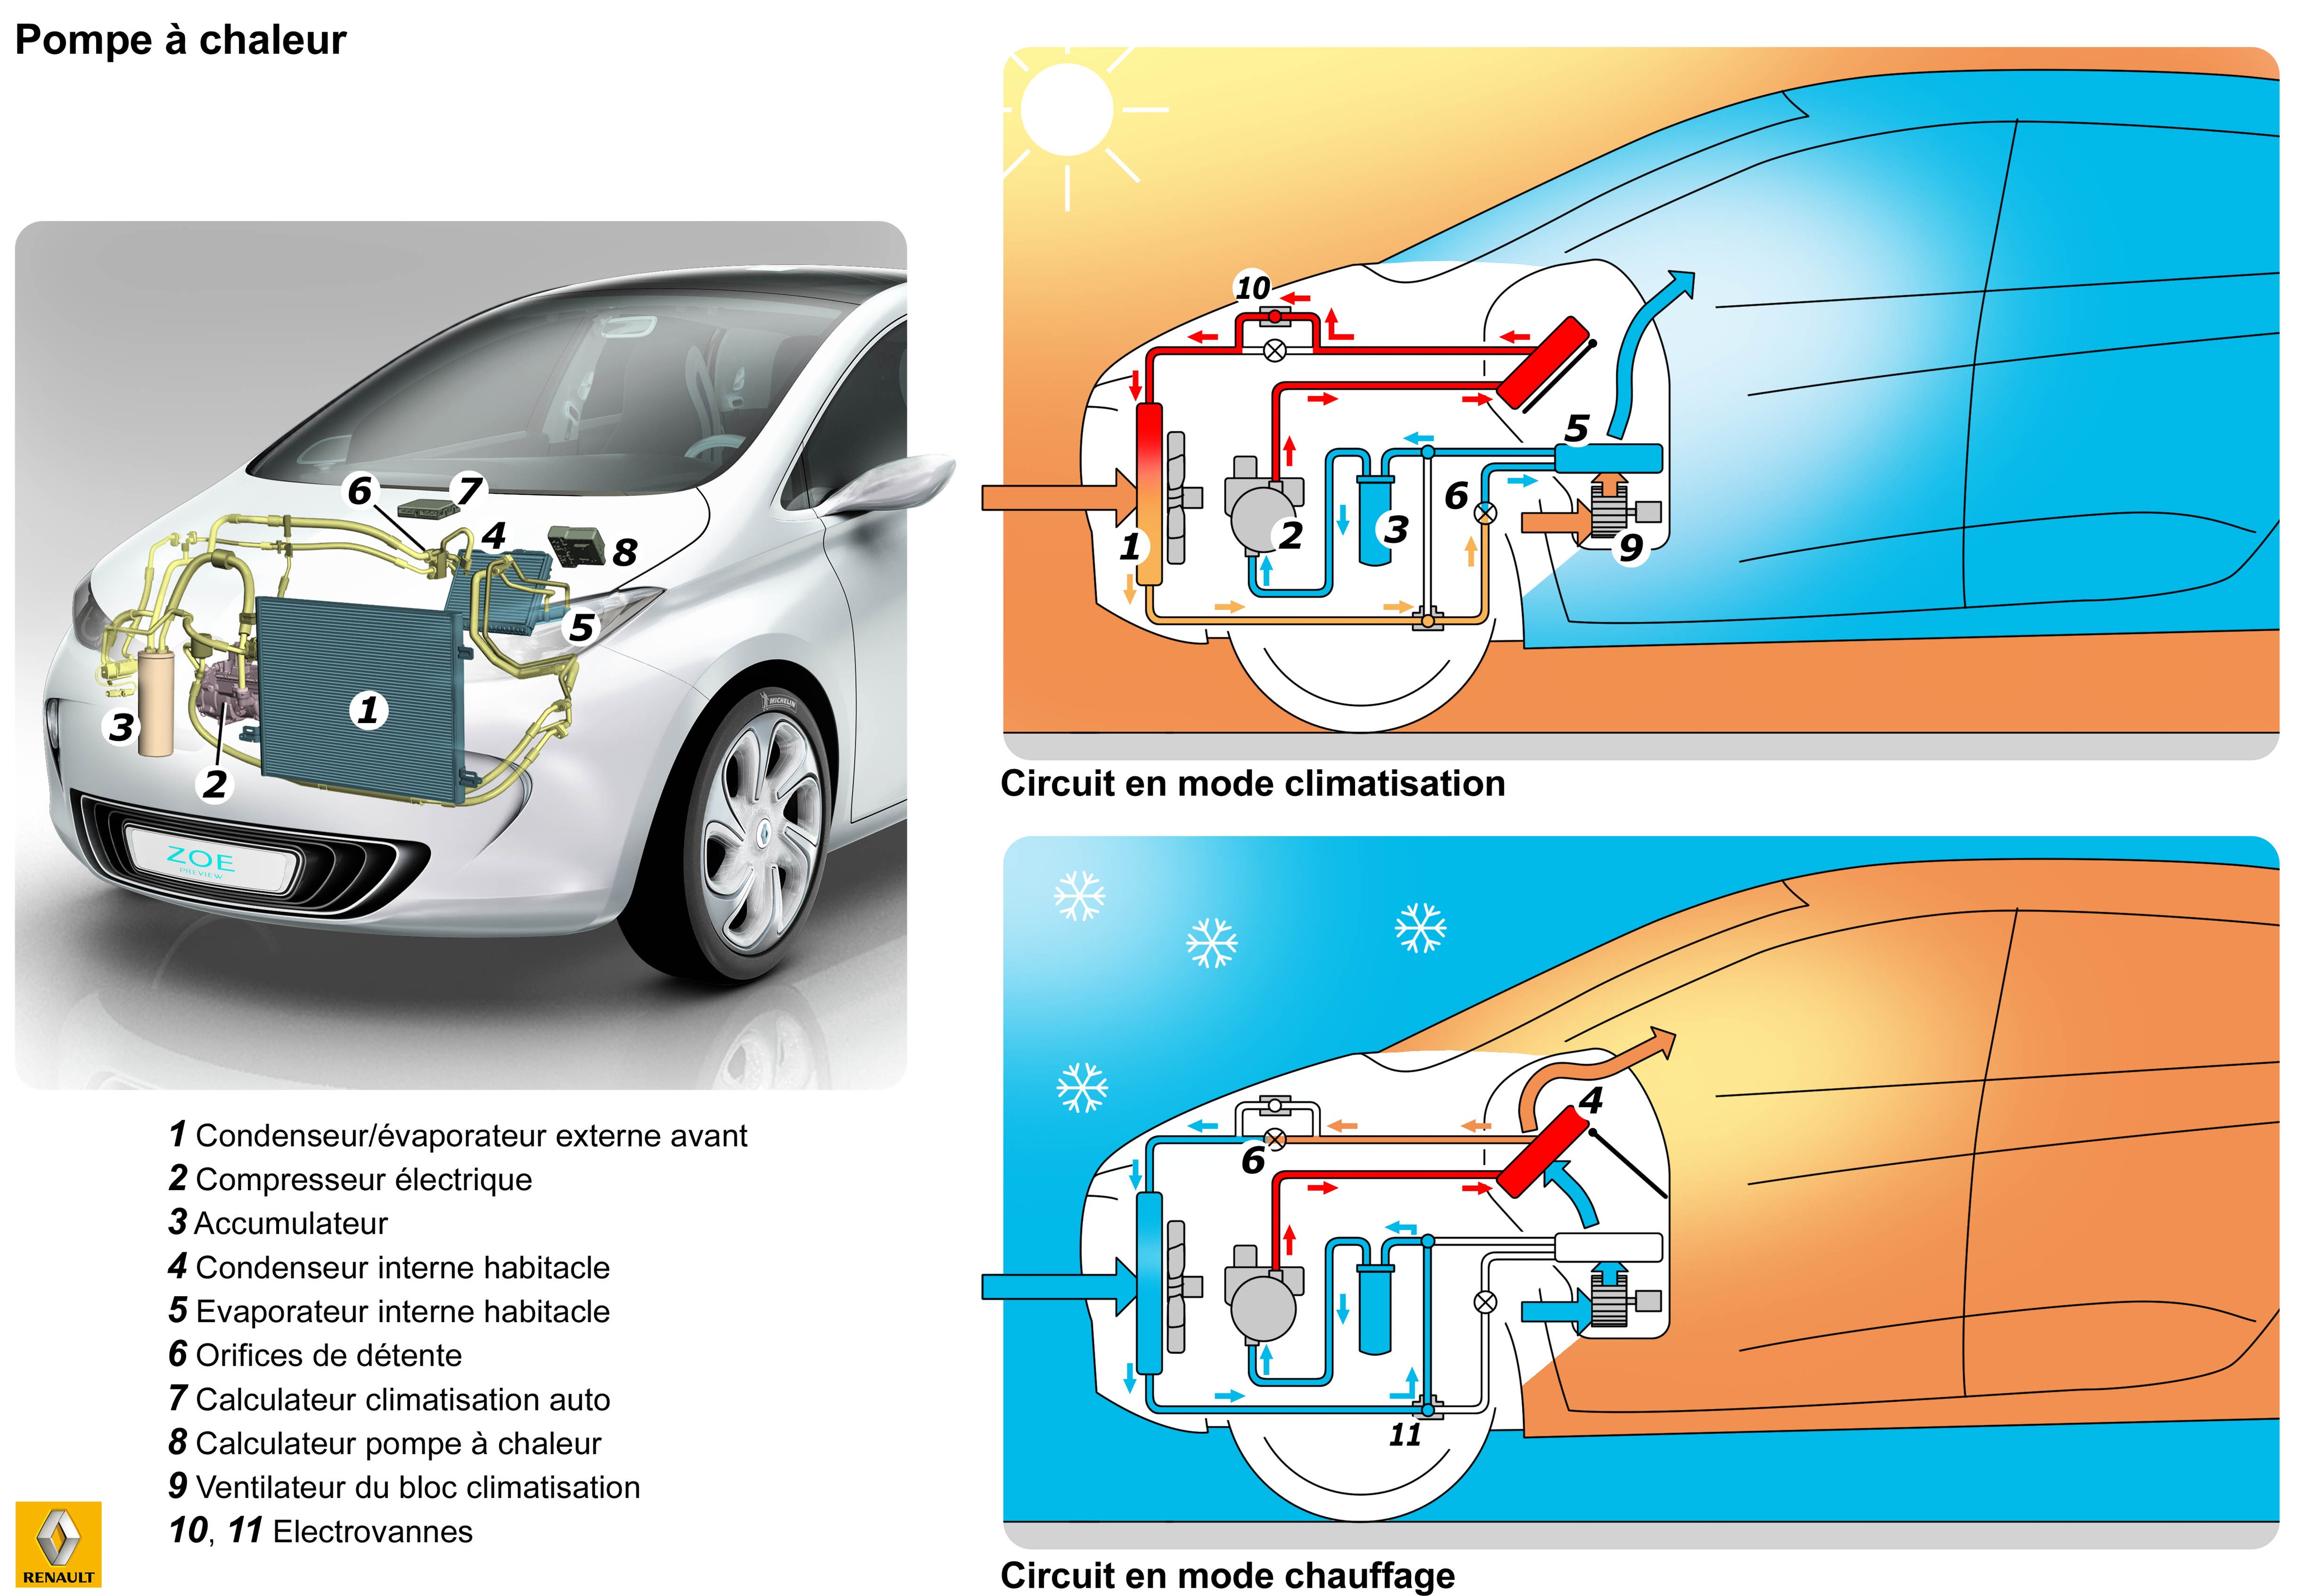 Pourquoi les voitures électriques ont une pompe à chaleur ?